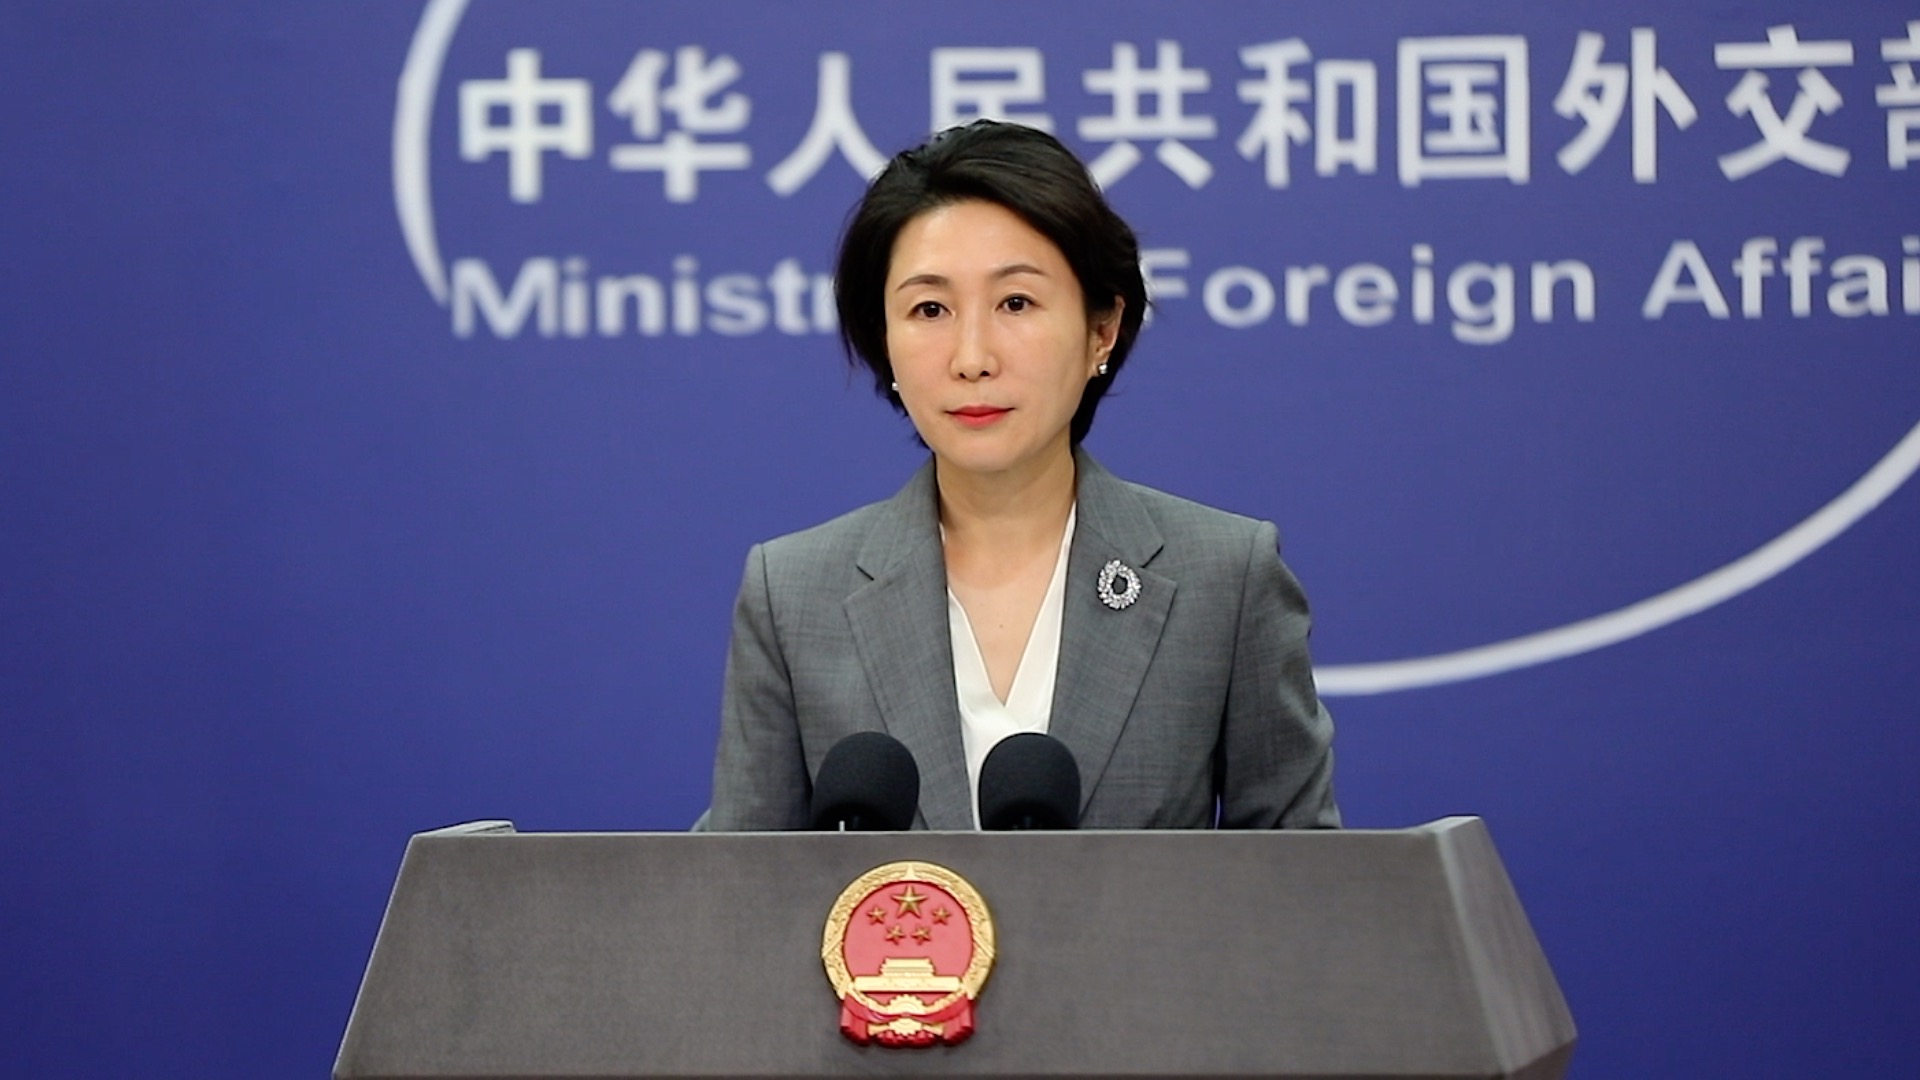 外交部发言人毛宁现场纠正提问:台湾没有什么副总统